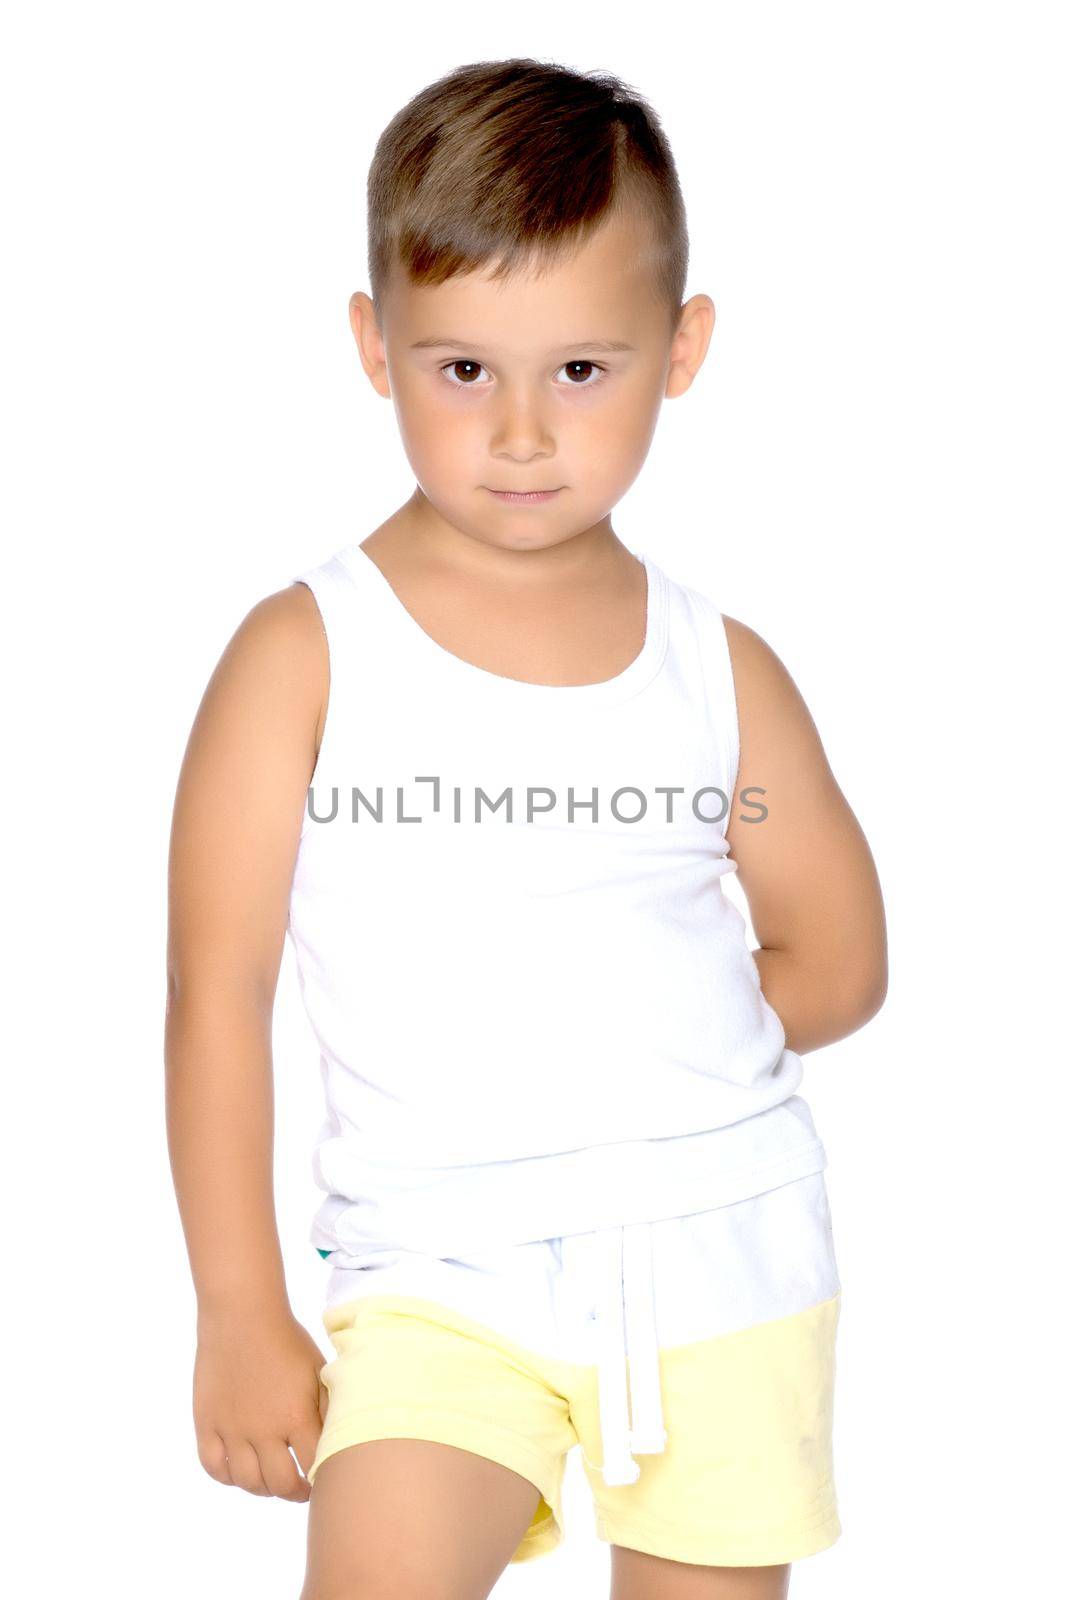 A little boy in a white T-shirt. by kolesnikov_studio